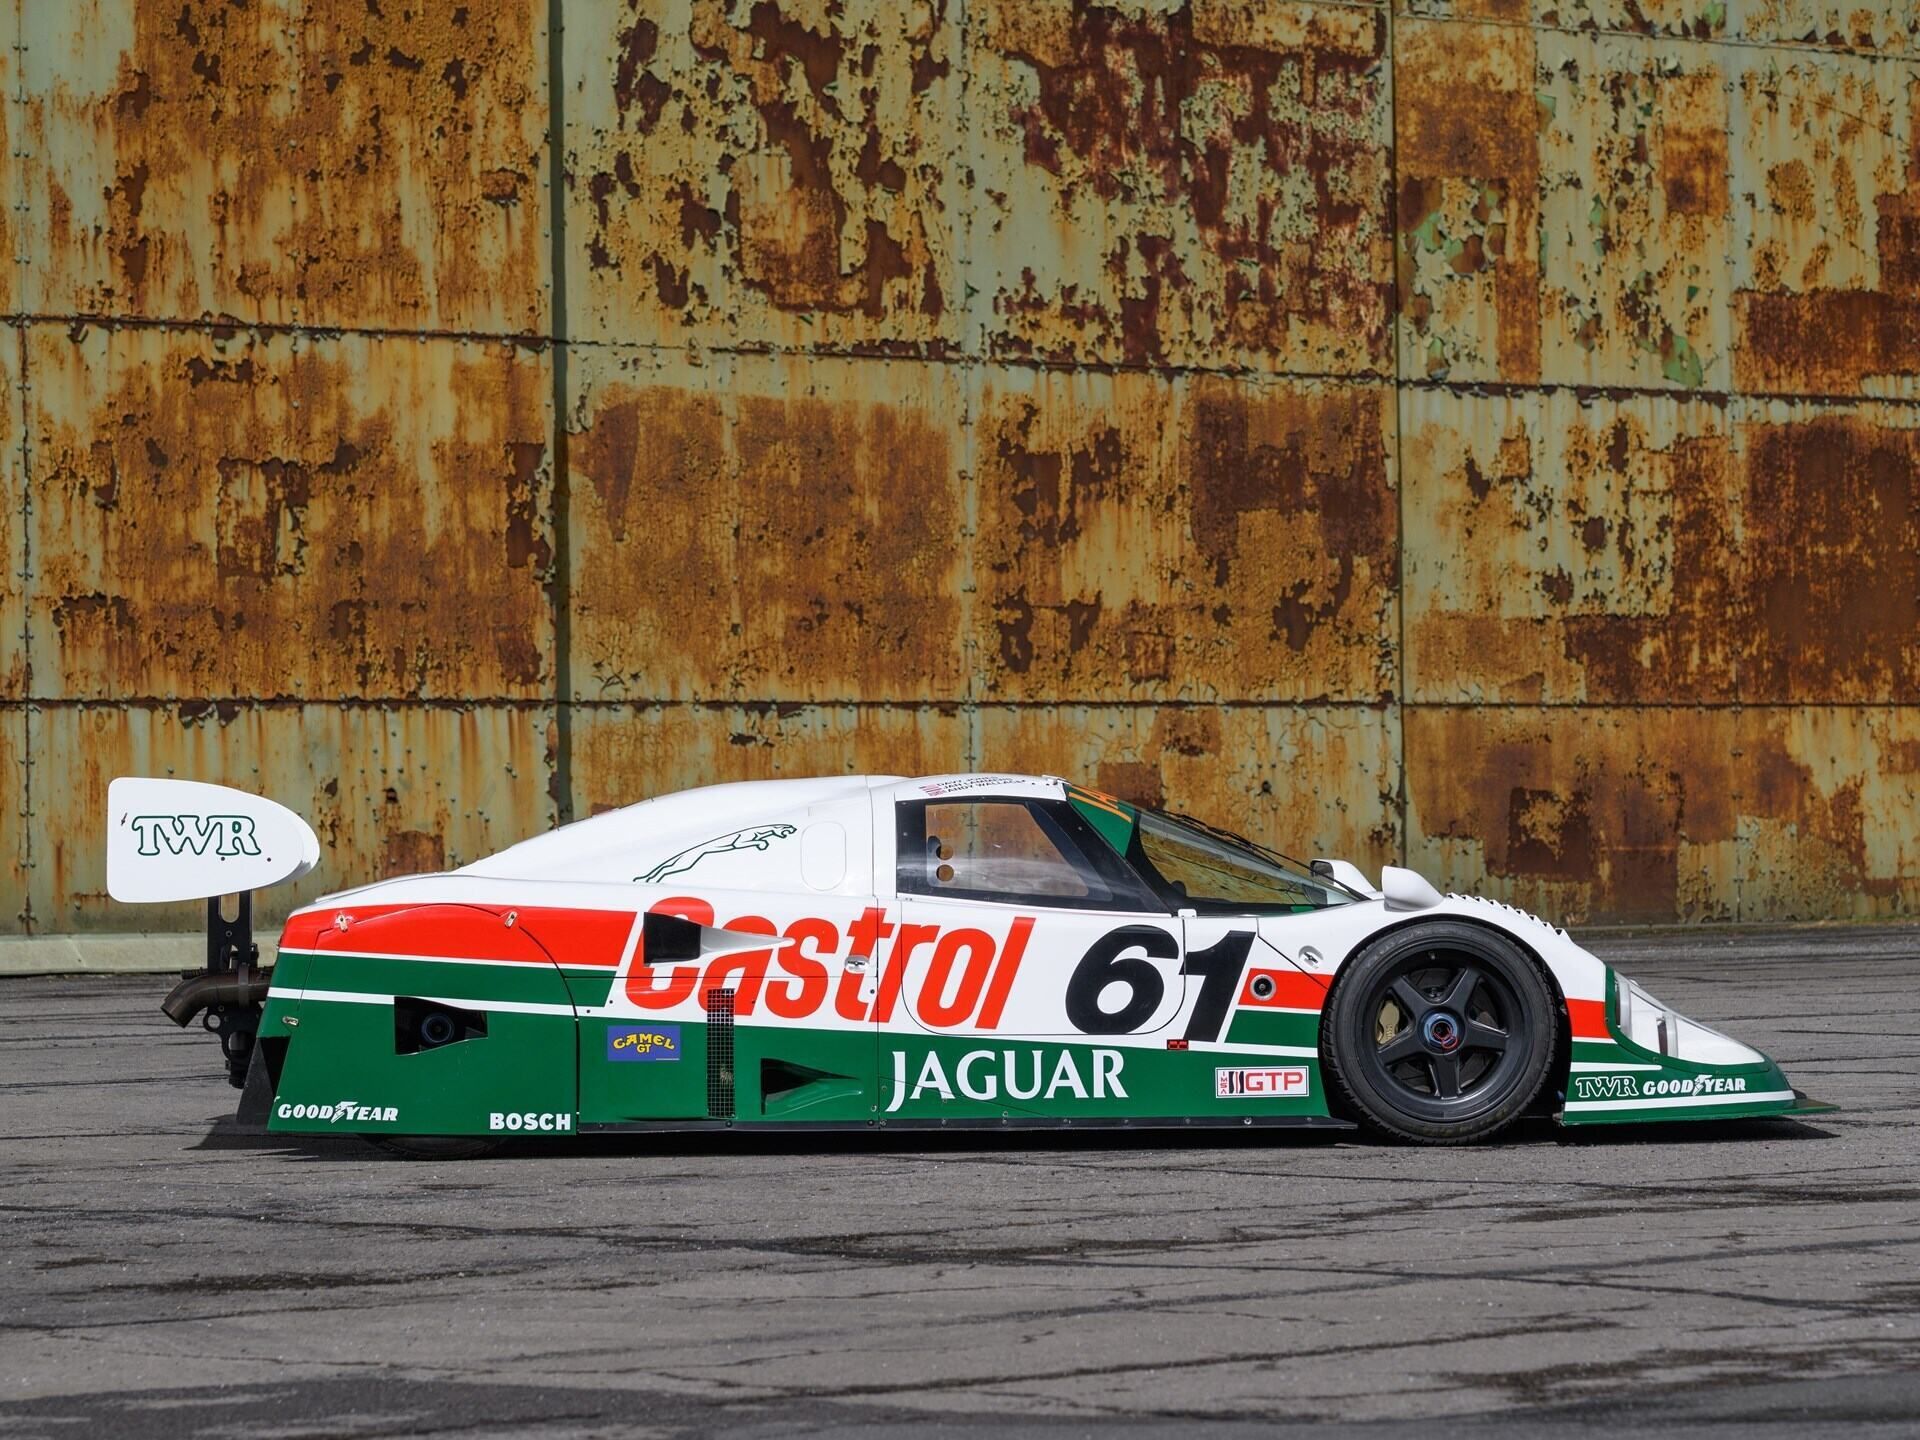 Jaguar XJR-9 Daytona Auction Side View